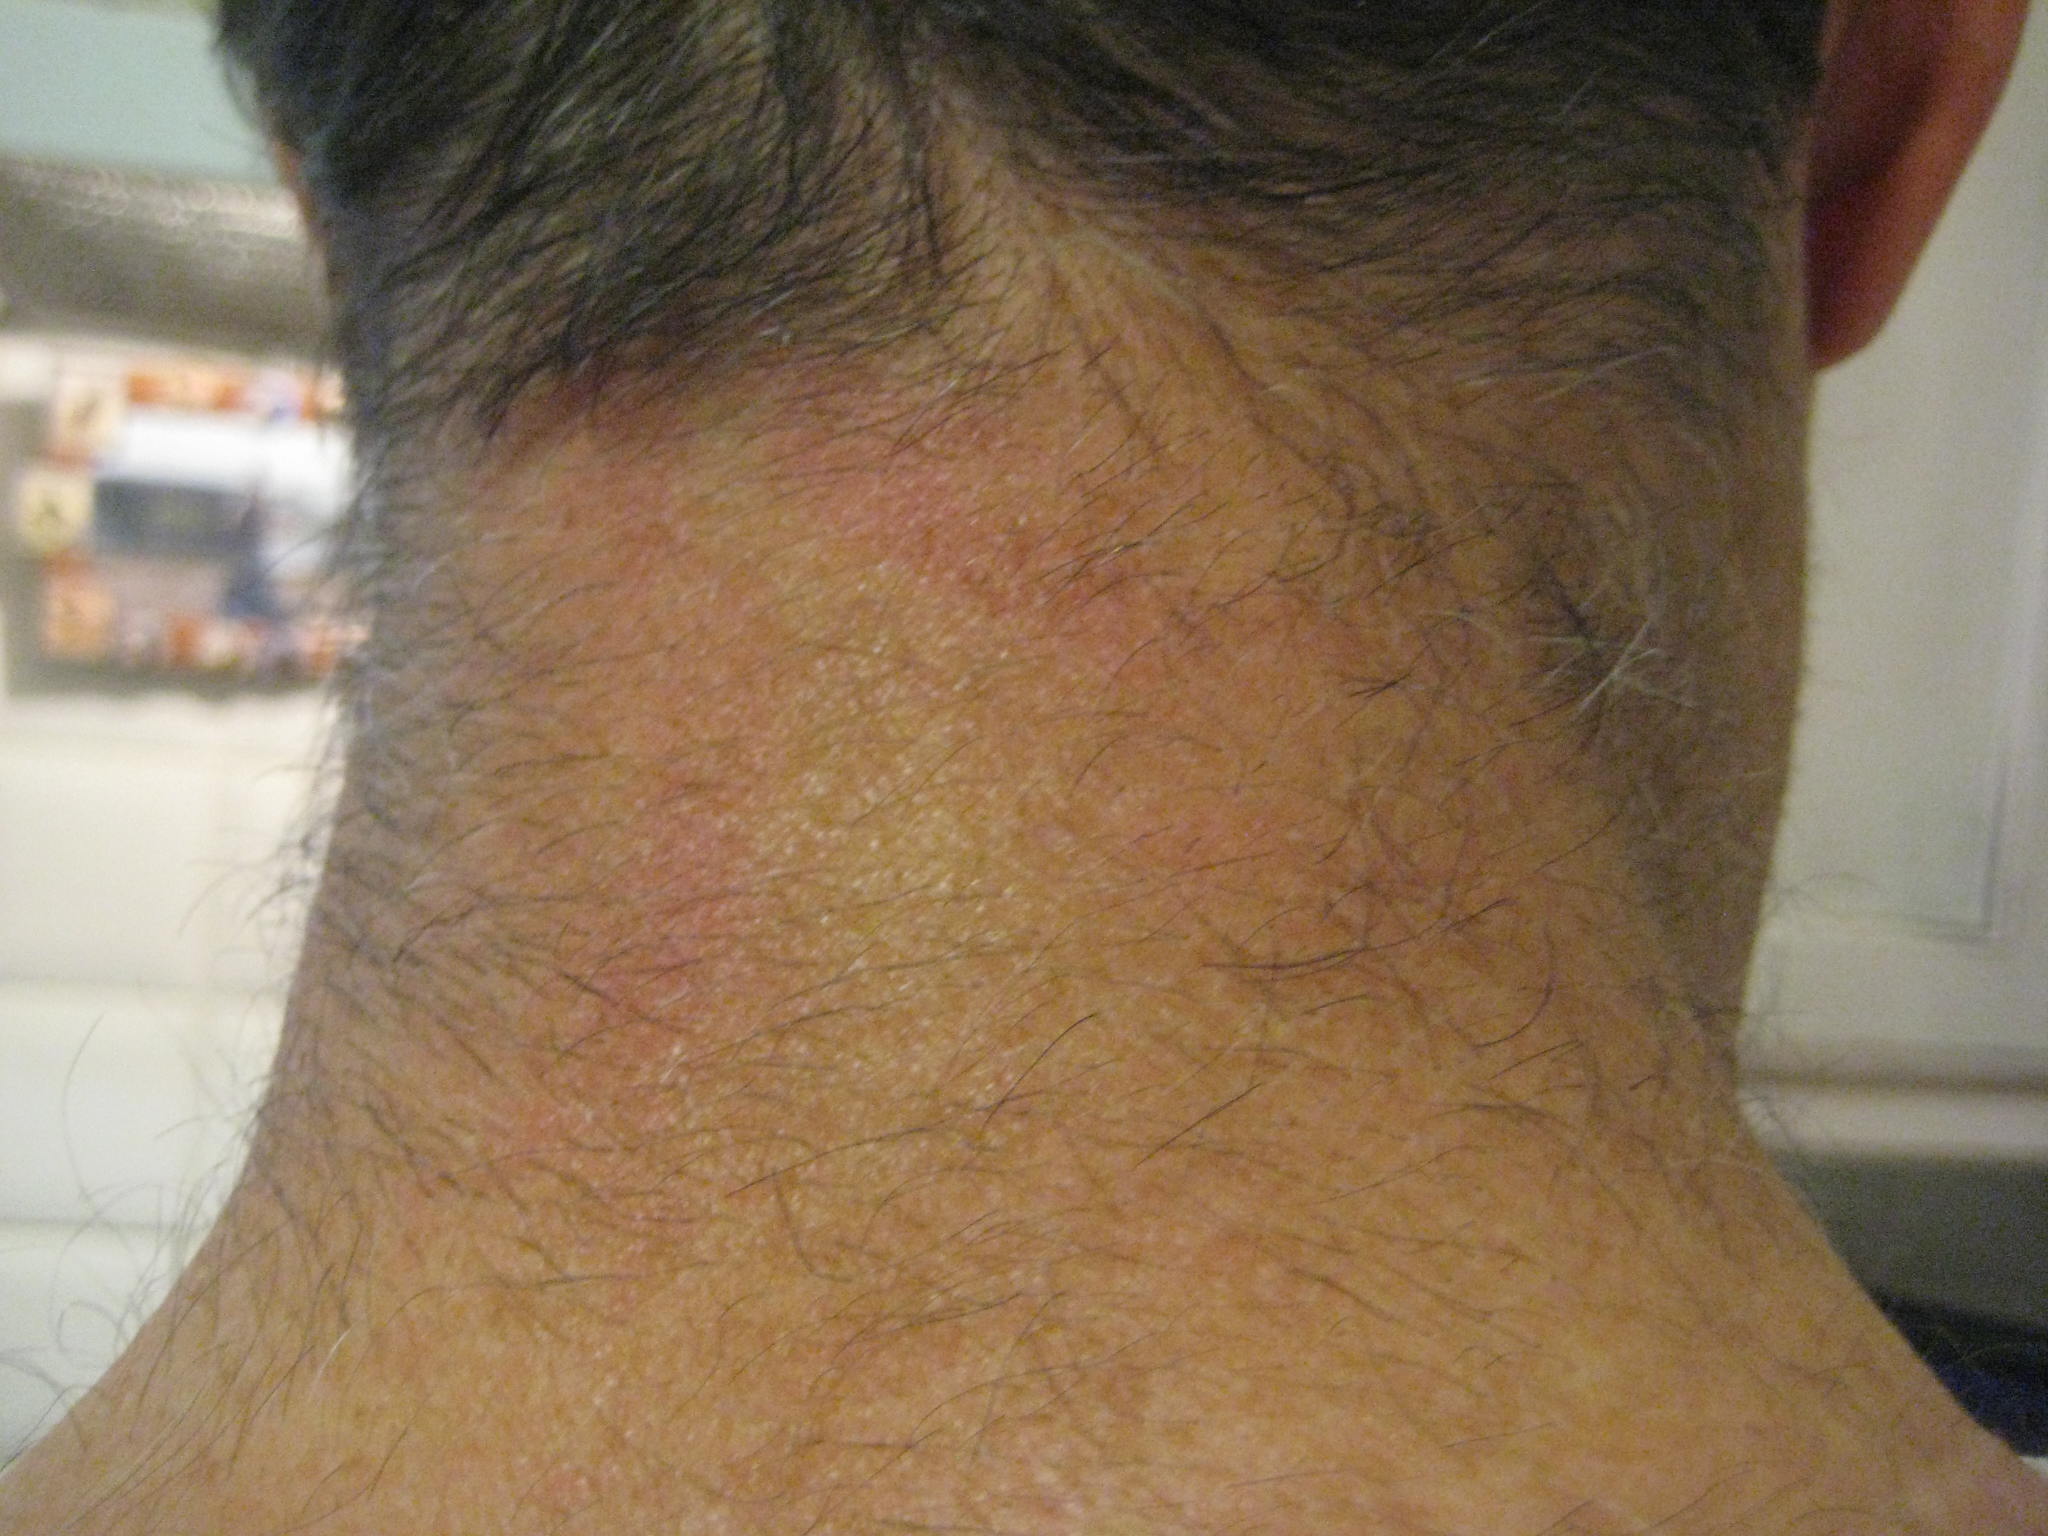 swollen lymph node on back of head